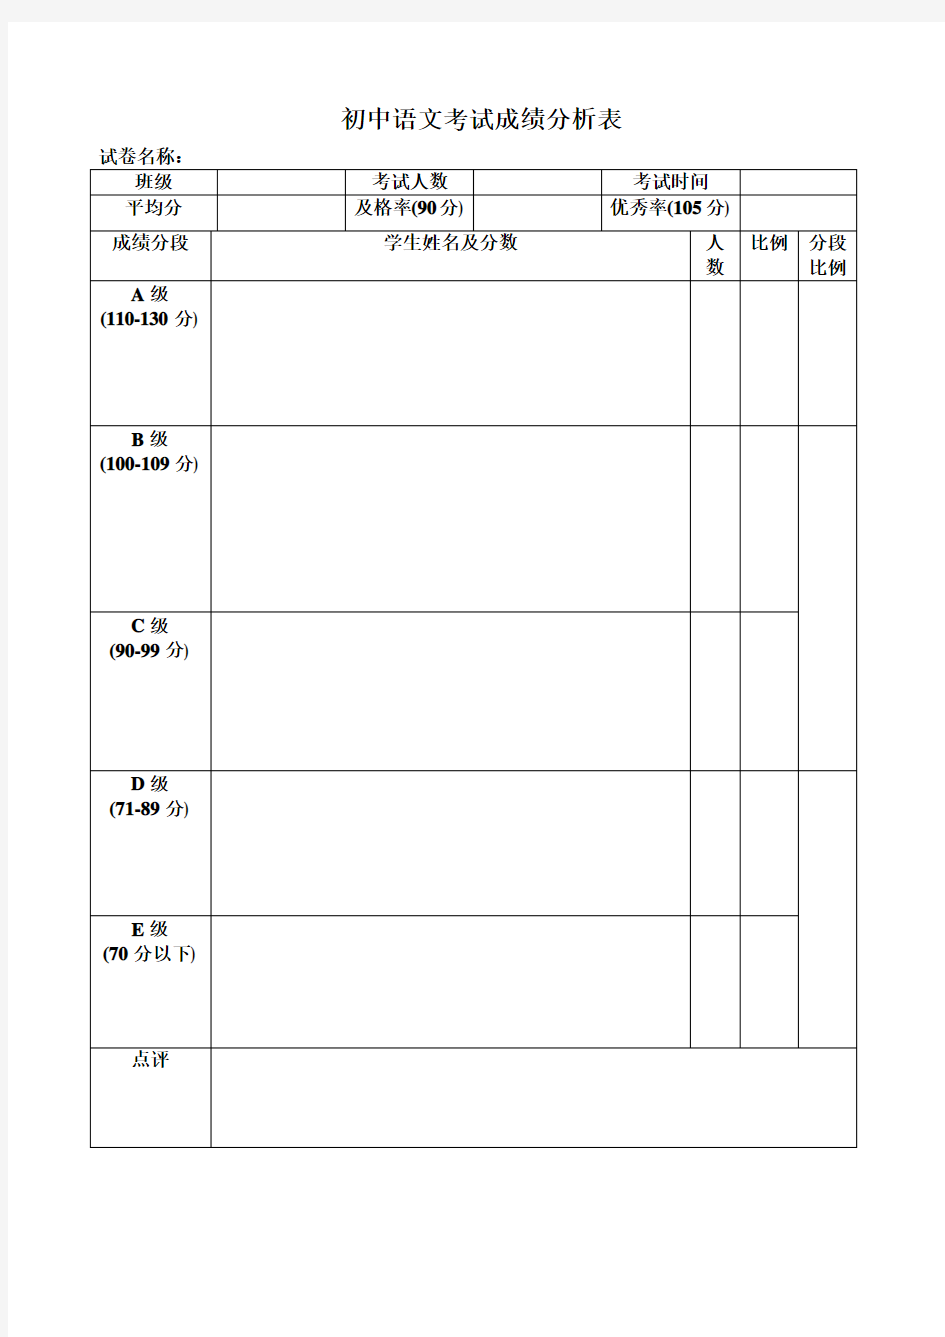 初中语文考试成绩分析表(模板)